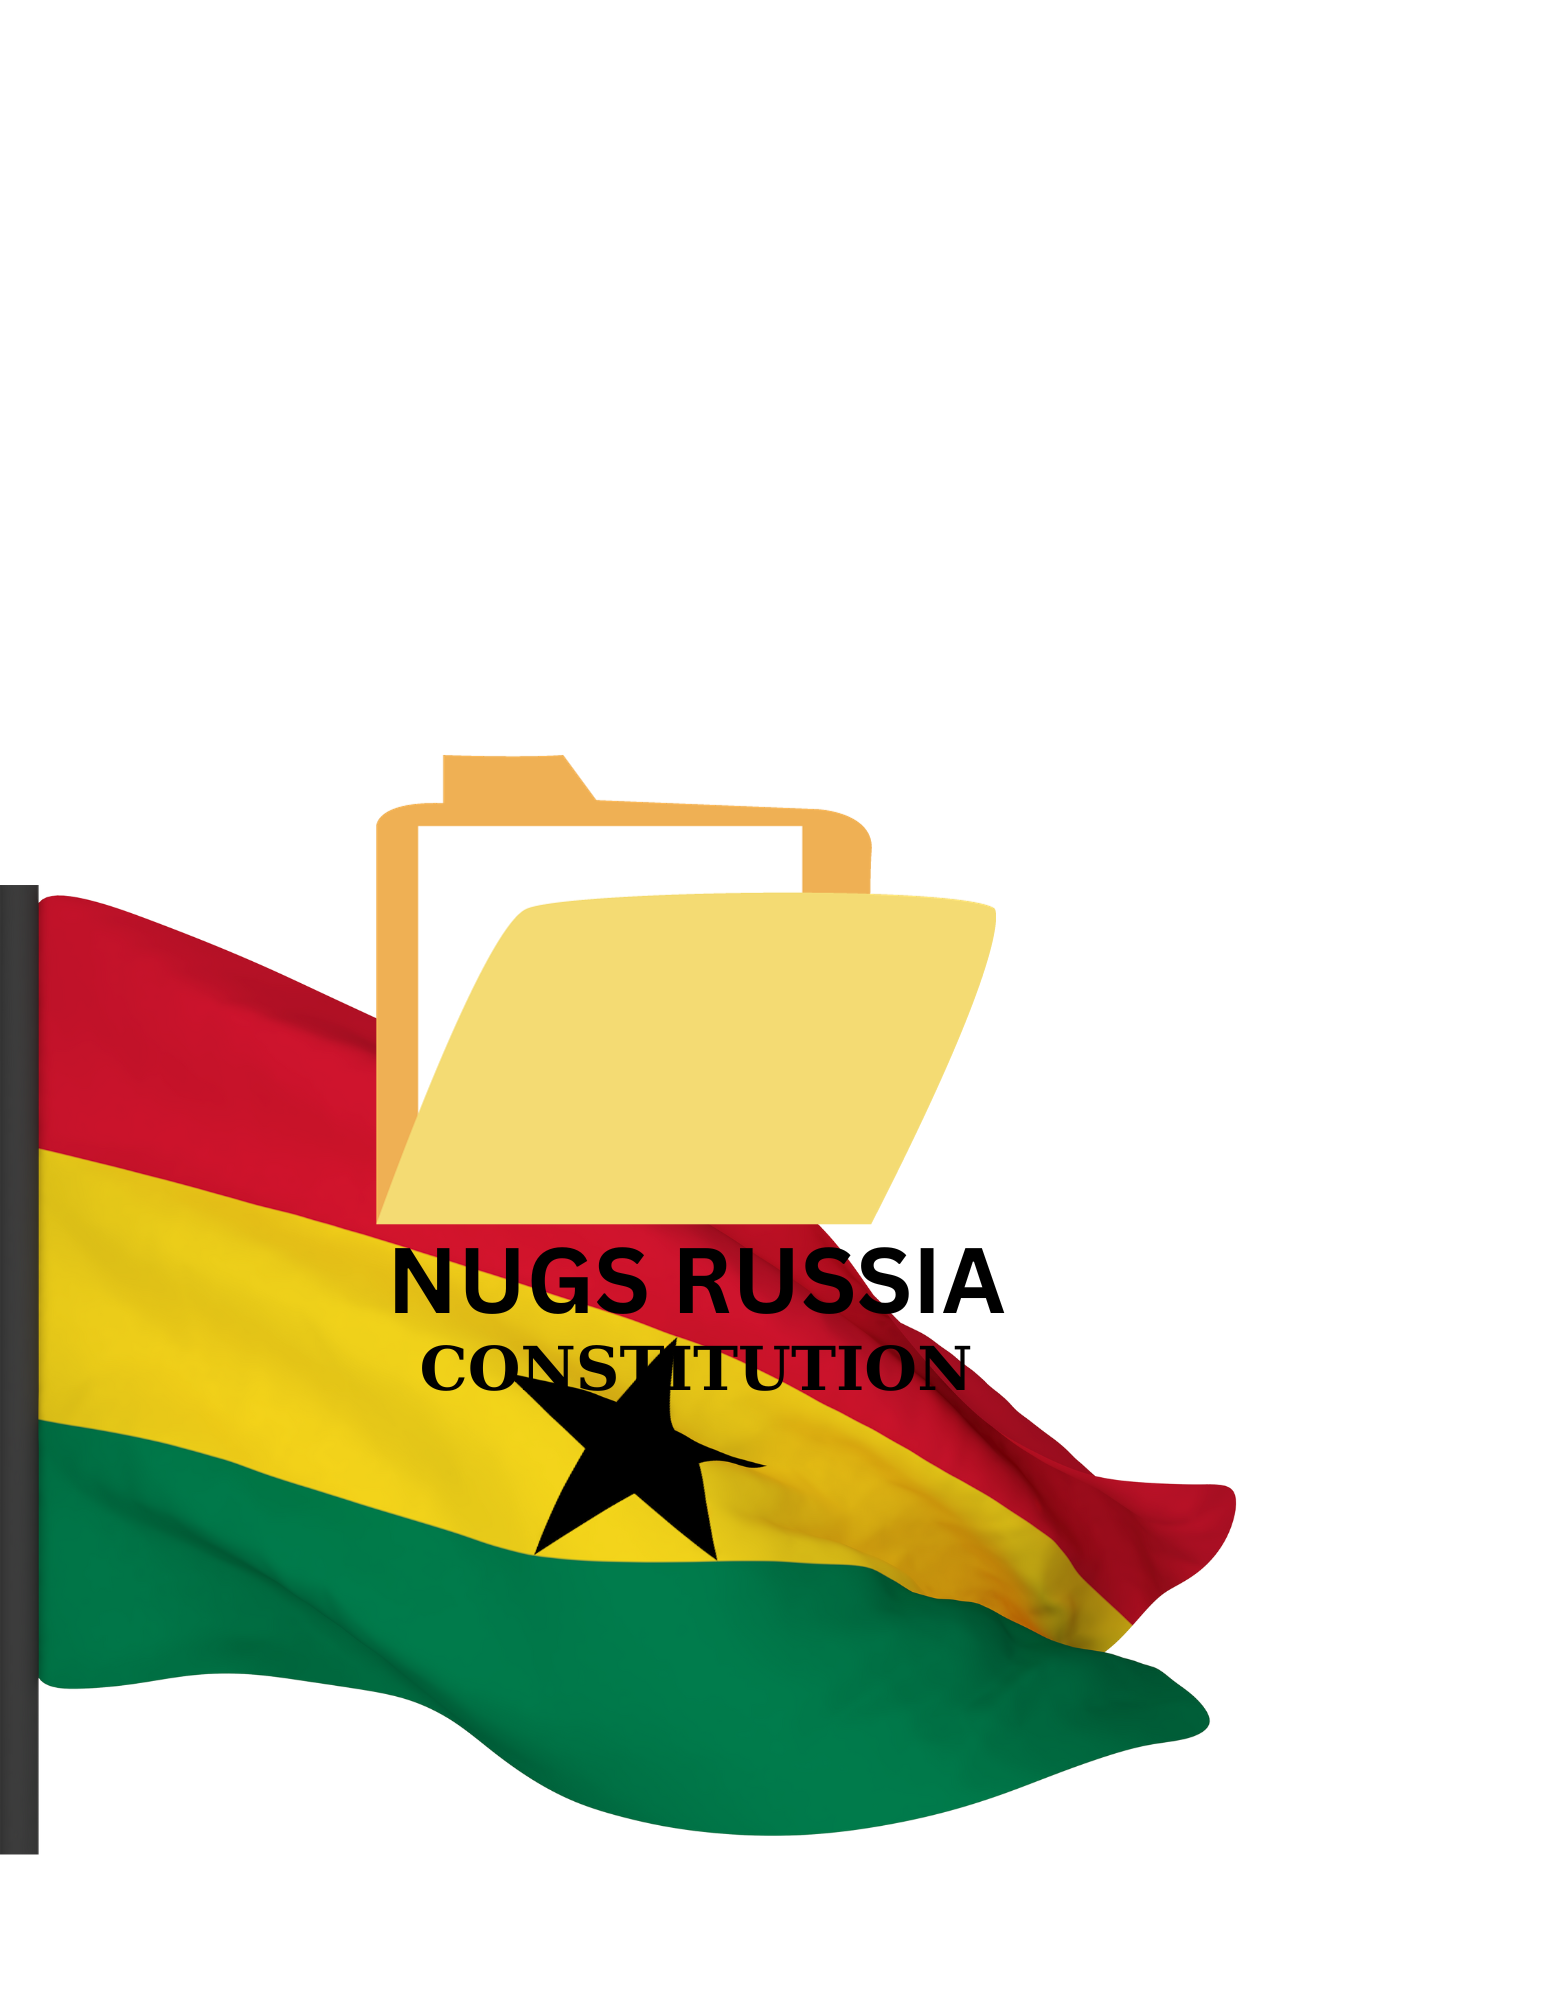 Nugs Russia Constitution pdf